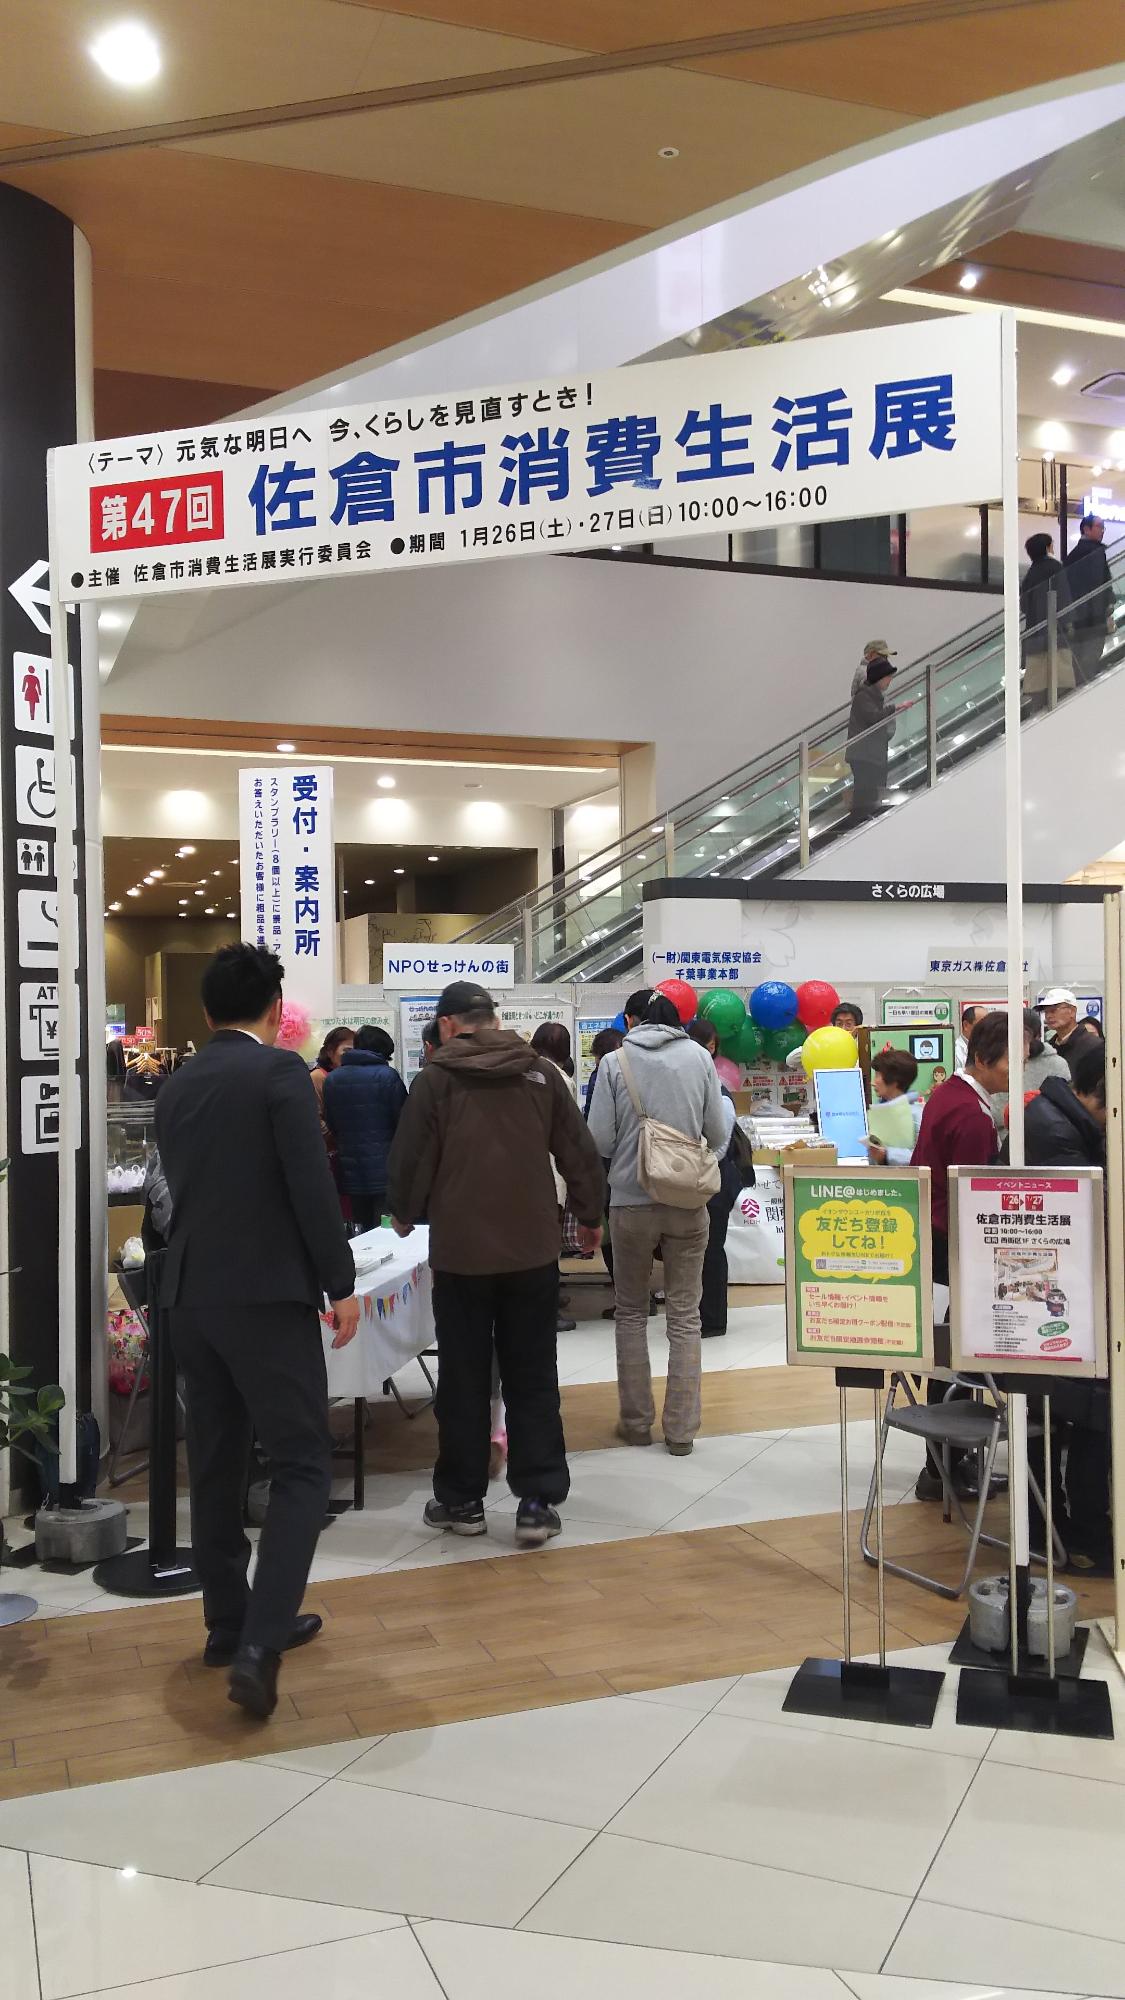 「第47回佐倉市消費生活展」と表示された会場で、色々なパネルや品物が展示されており、沢山の来場者で賑わっている様子の写真